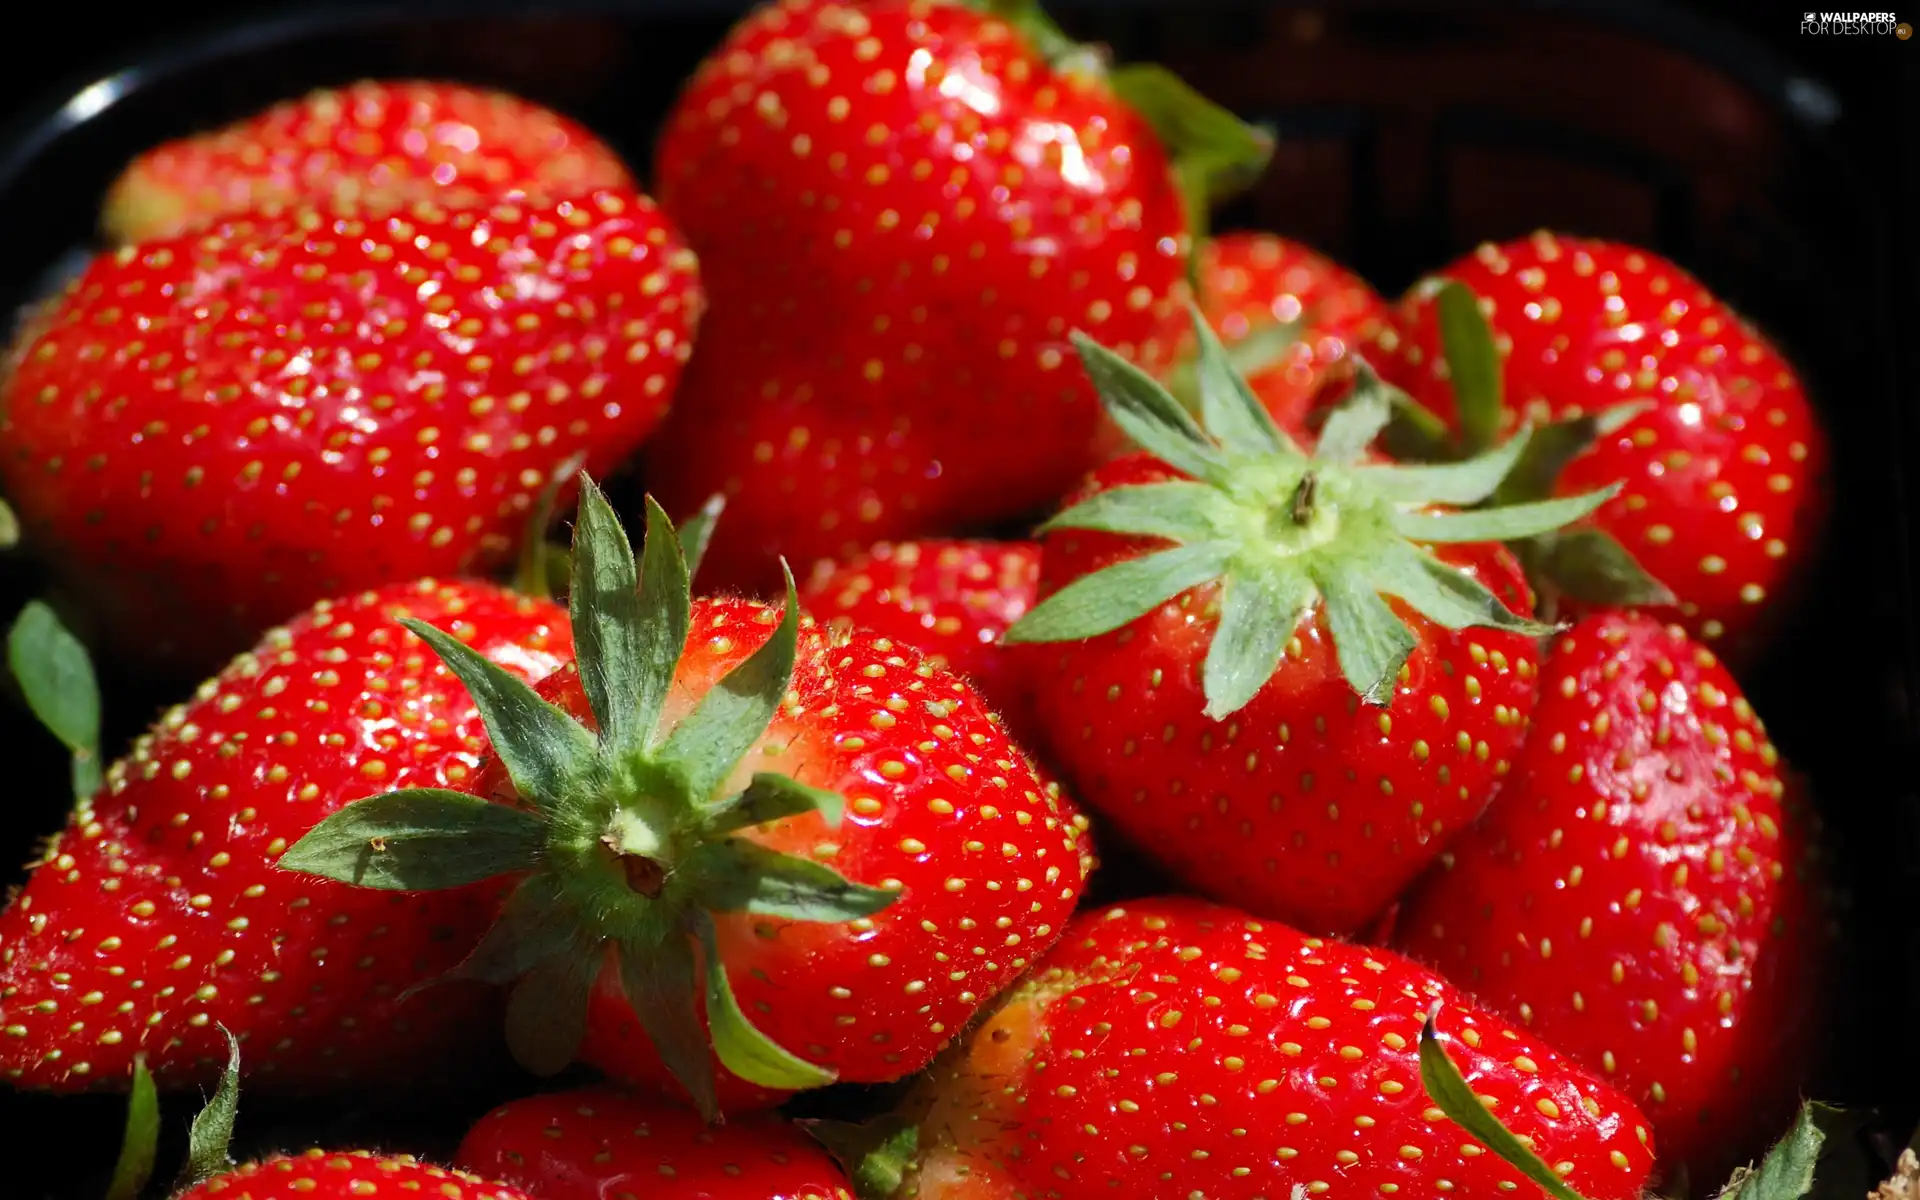 Mature, strawberries